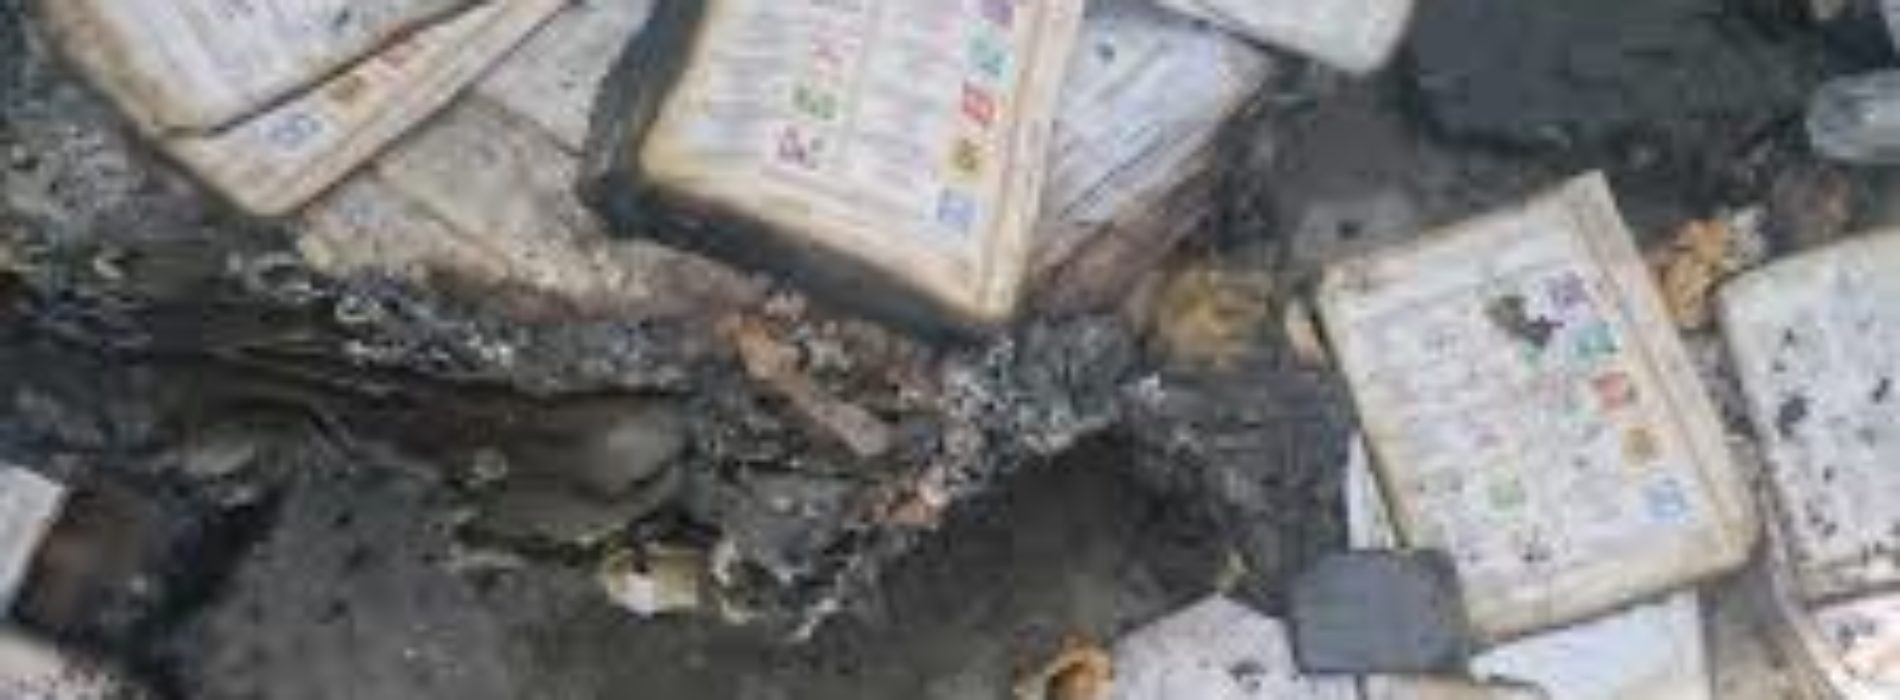 Confirma el IEEPCO quema de boletas en San Francisco del
Mar